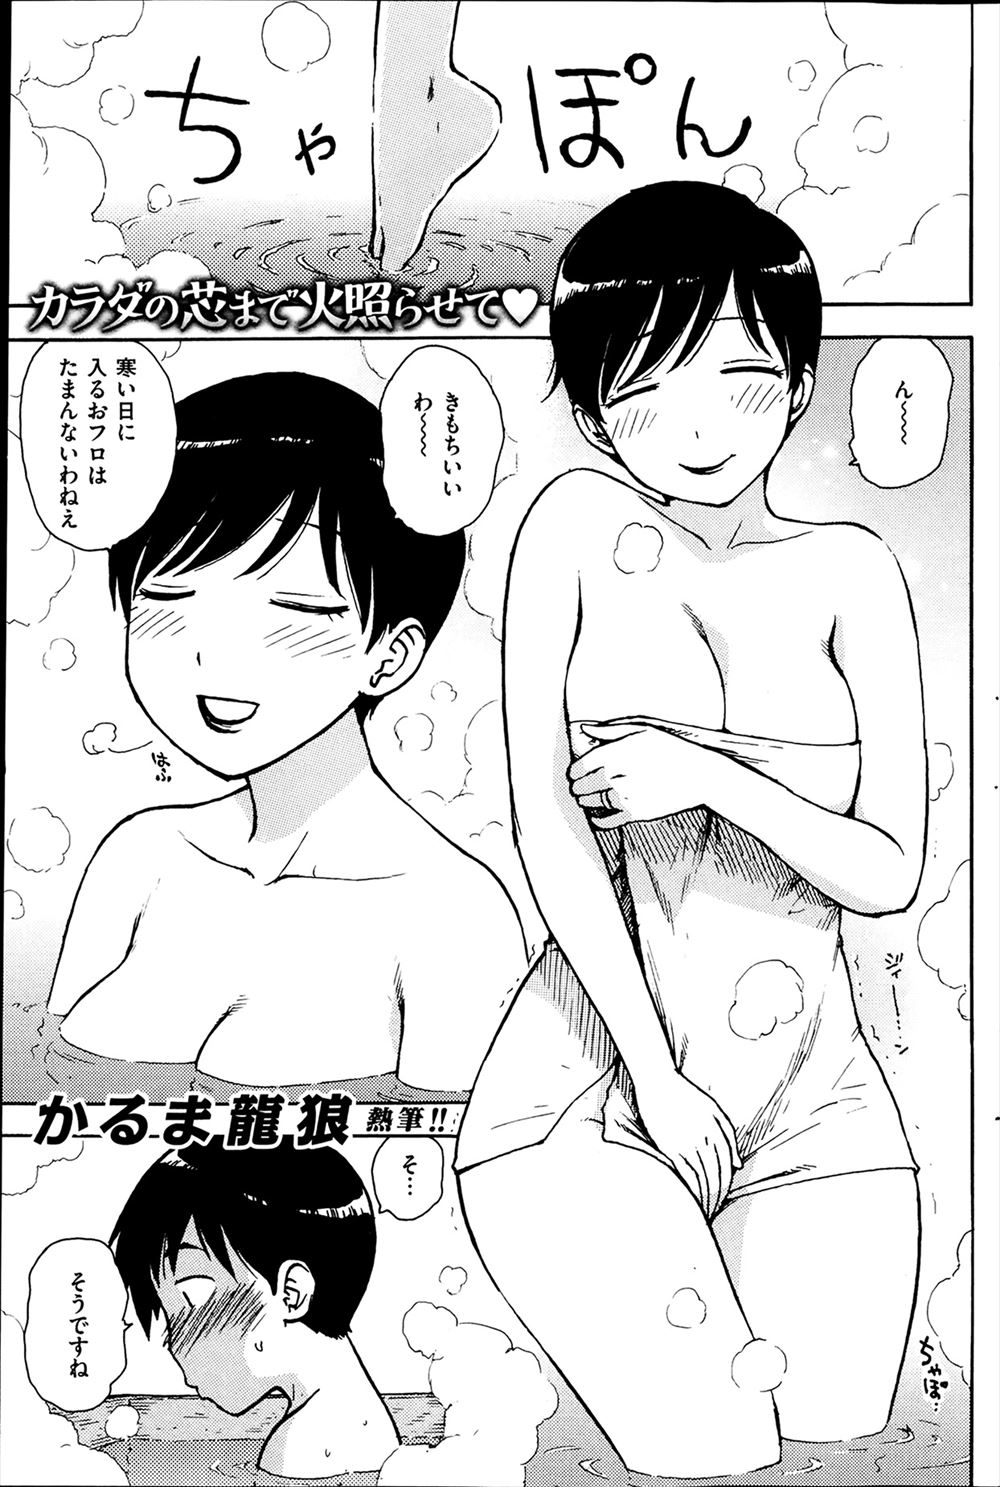 【エロ漫画】お隣さんのかまくら風呂に入らせてもらっていたら人妻が乱入してきてNTRセックスしたったｗｗｗ